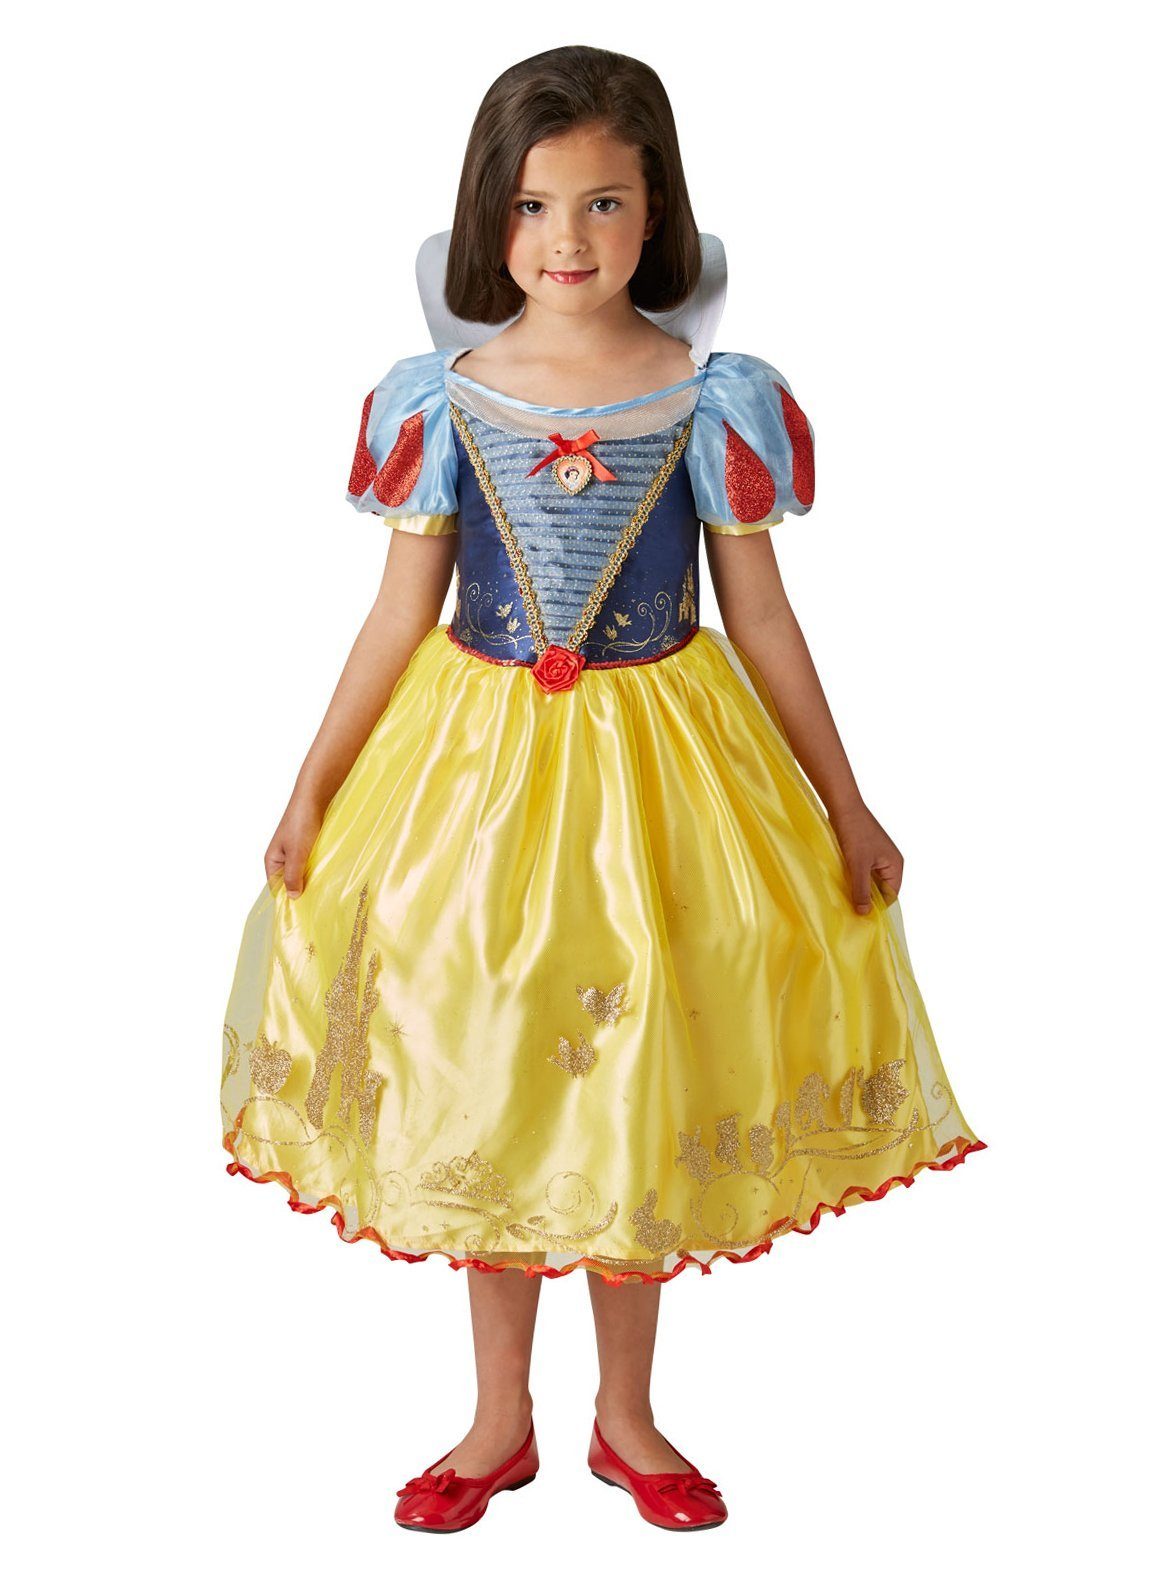 Rubie´s Kostüm Disney Prinzessin Schneewittchen Kinderkostüm, Bezauberndes Märchenkleid mit vielen Details